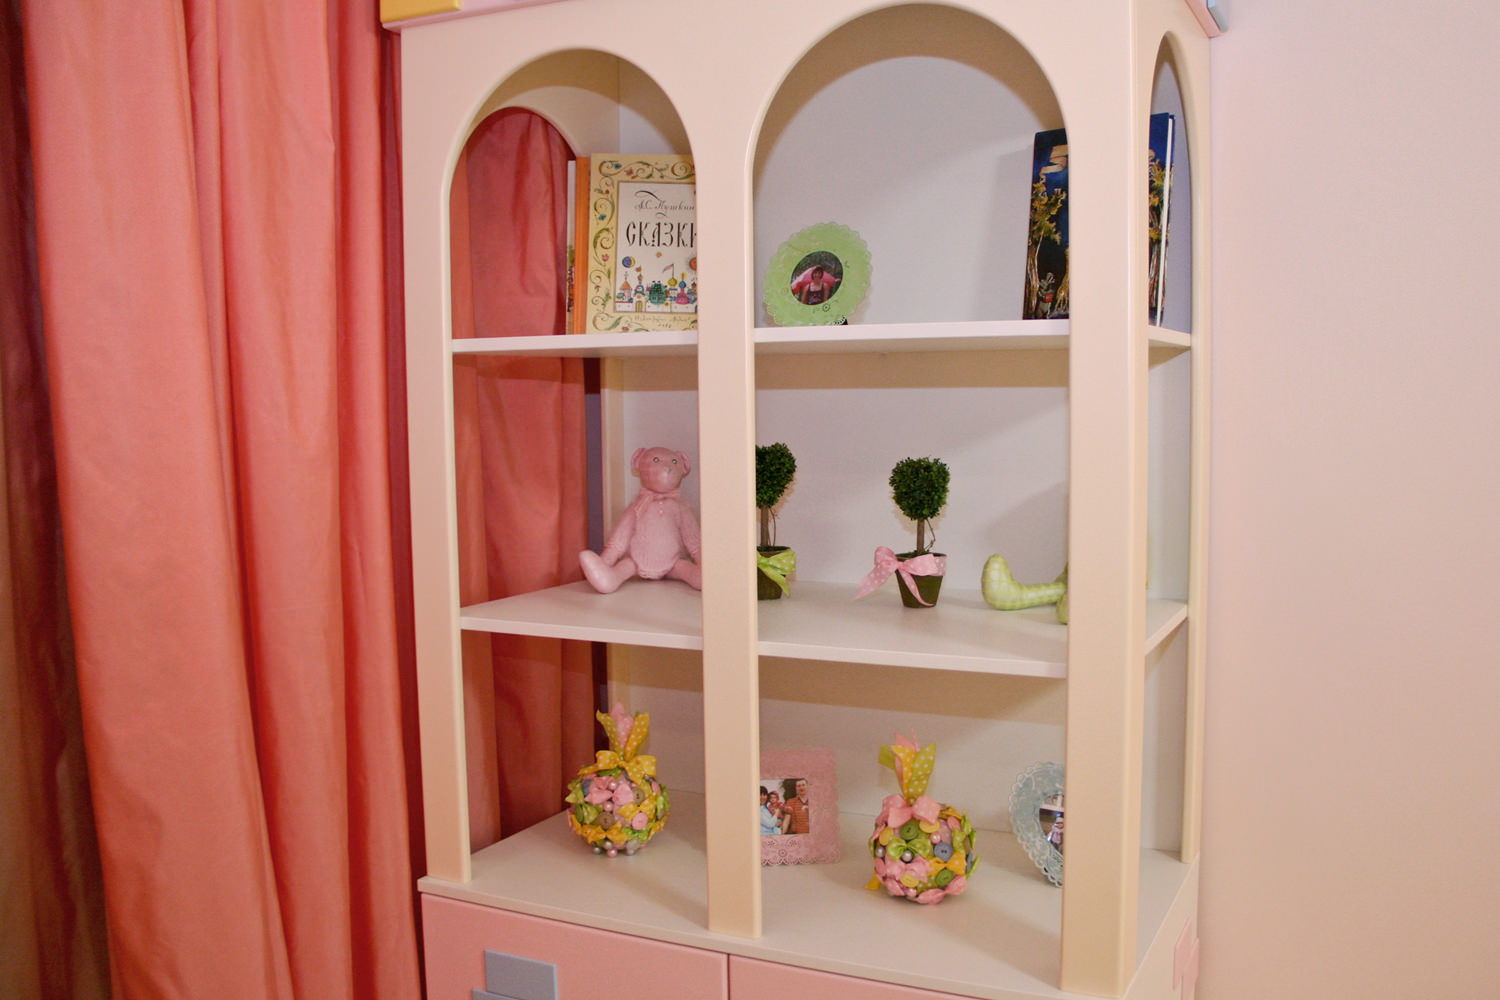 Здесь живут настоящие принцессы – детская мебель, кровати, для девочек в розовом интерьере